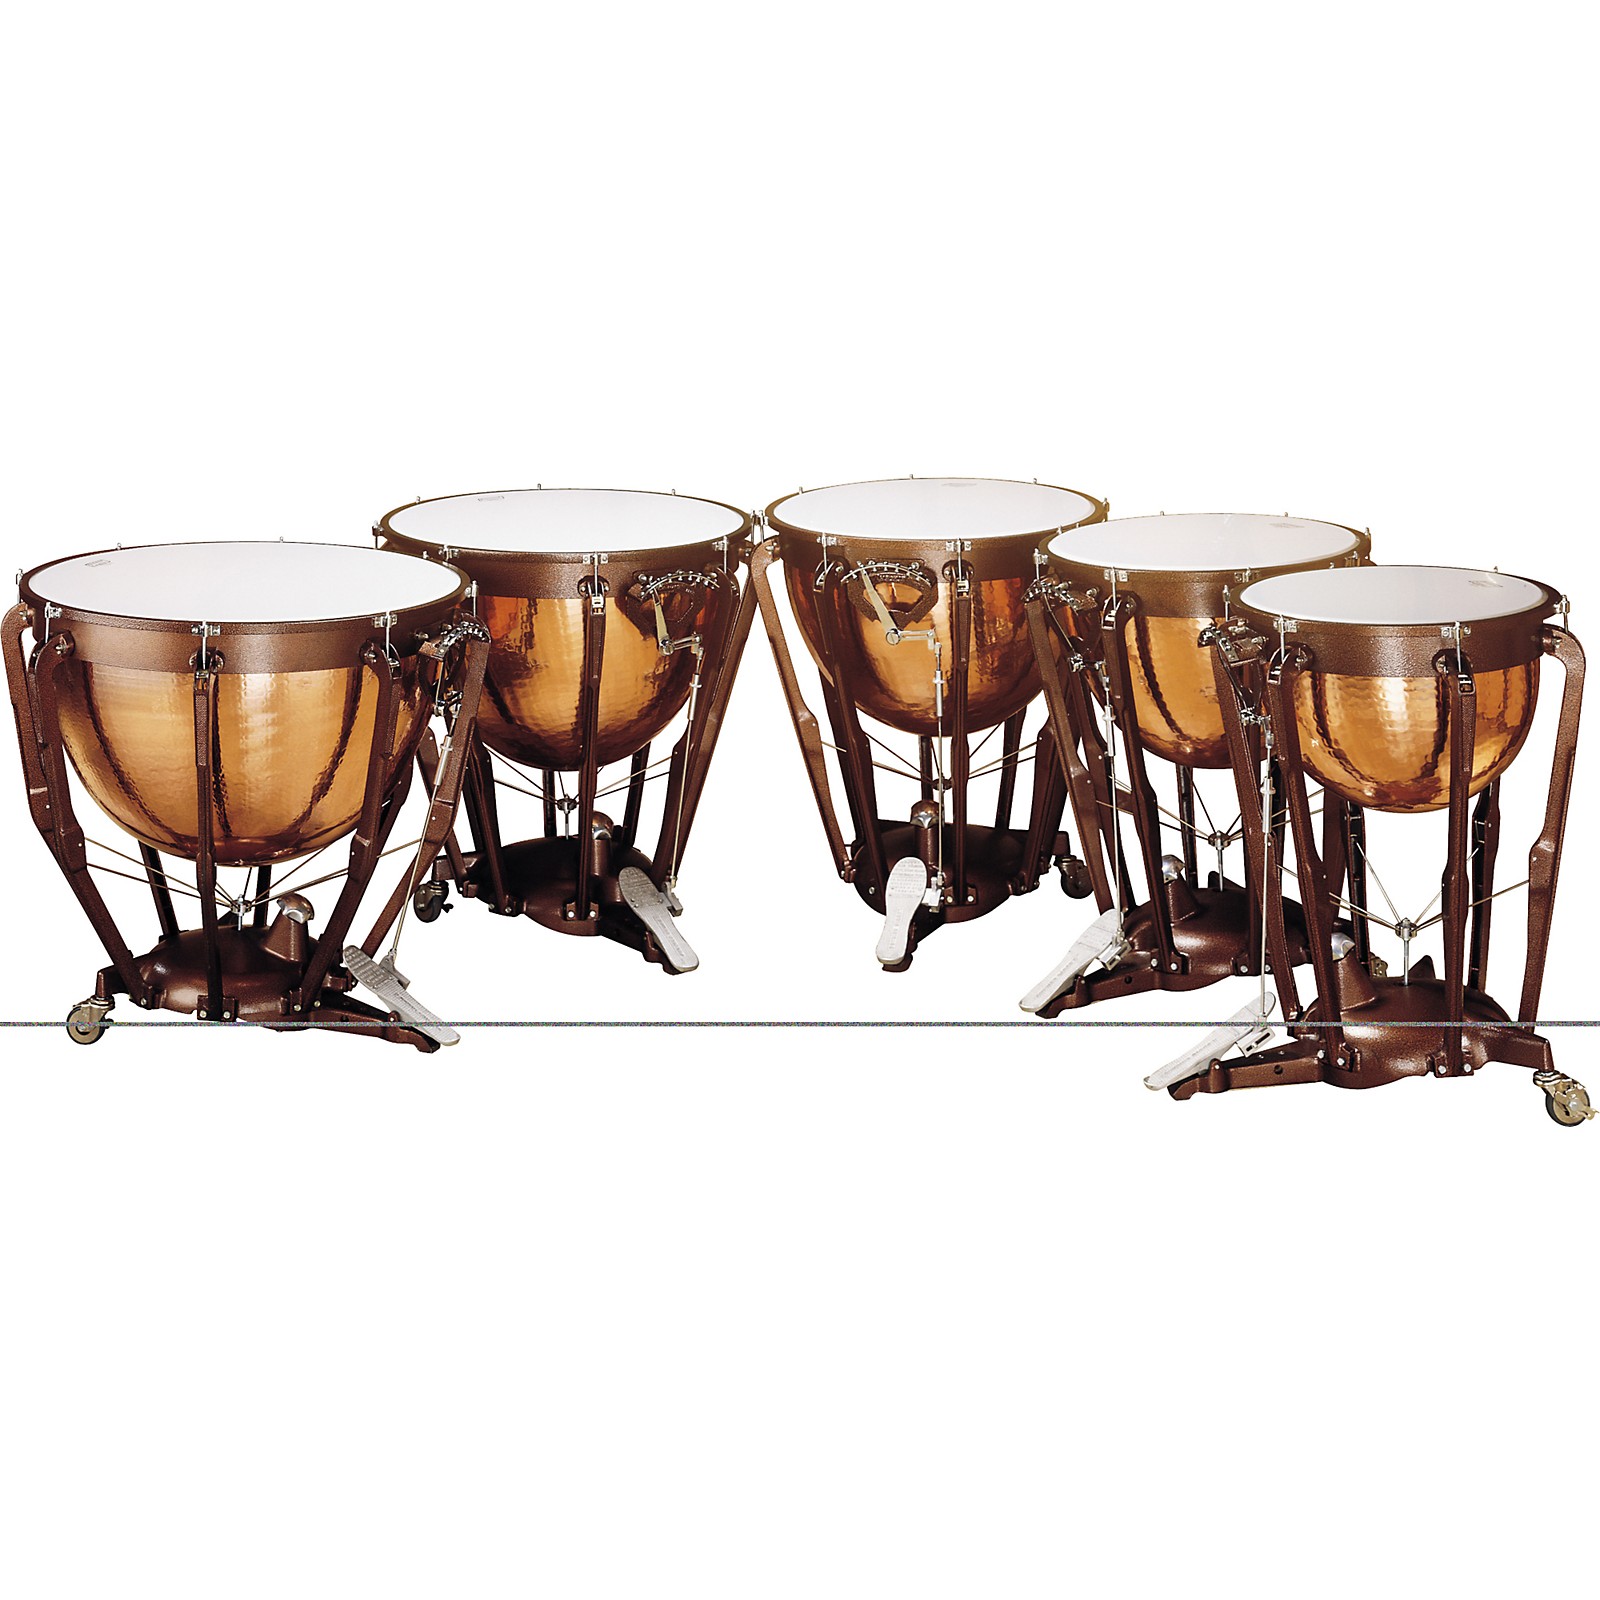 Ludwig Timpani Drum